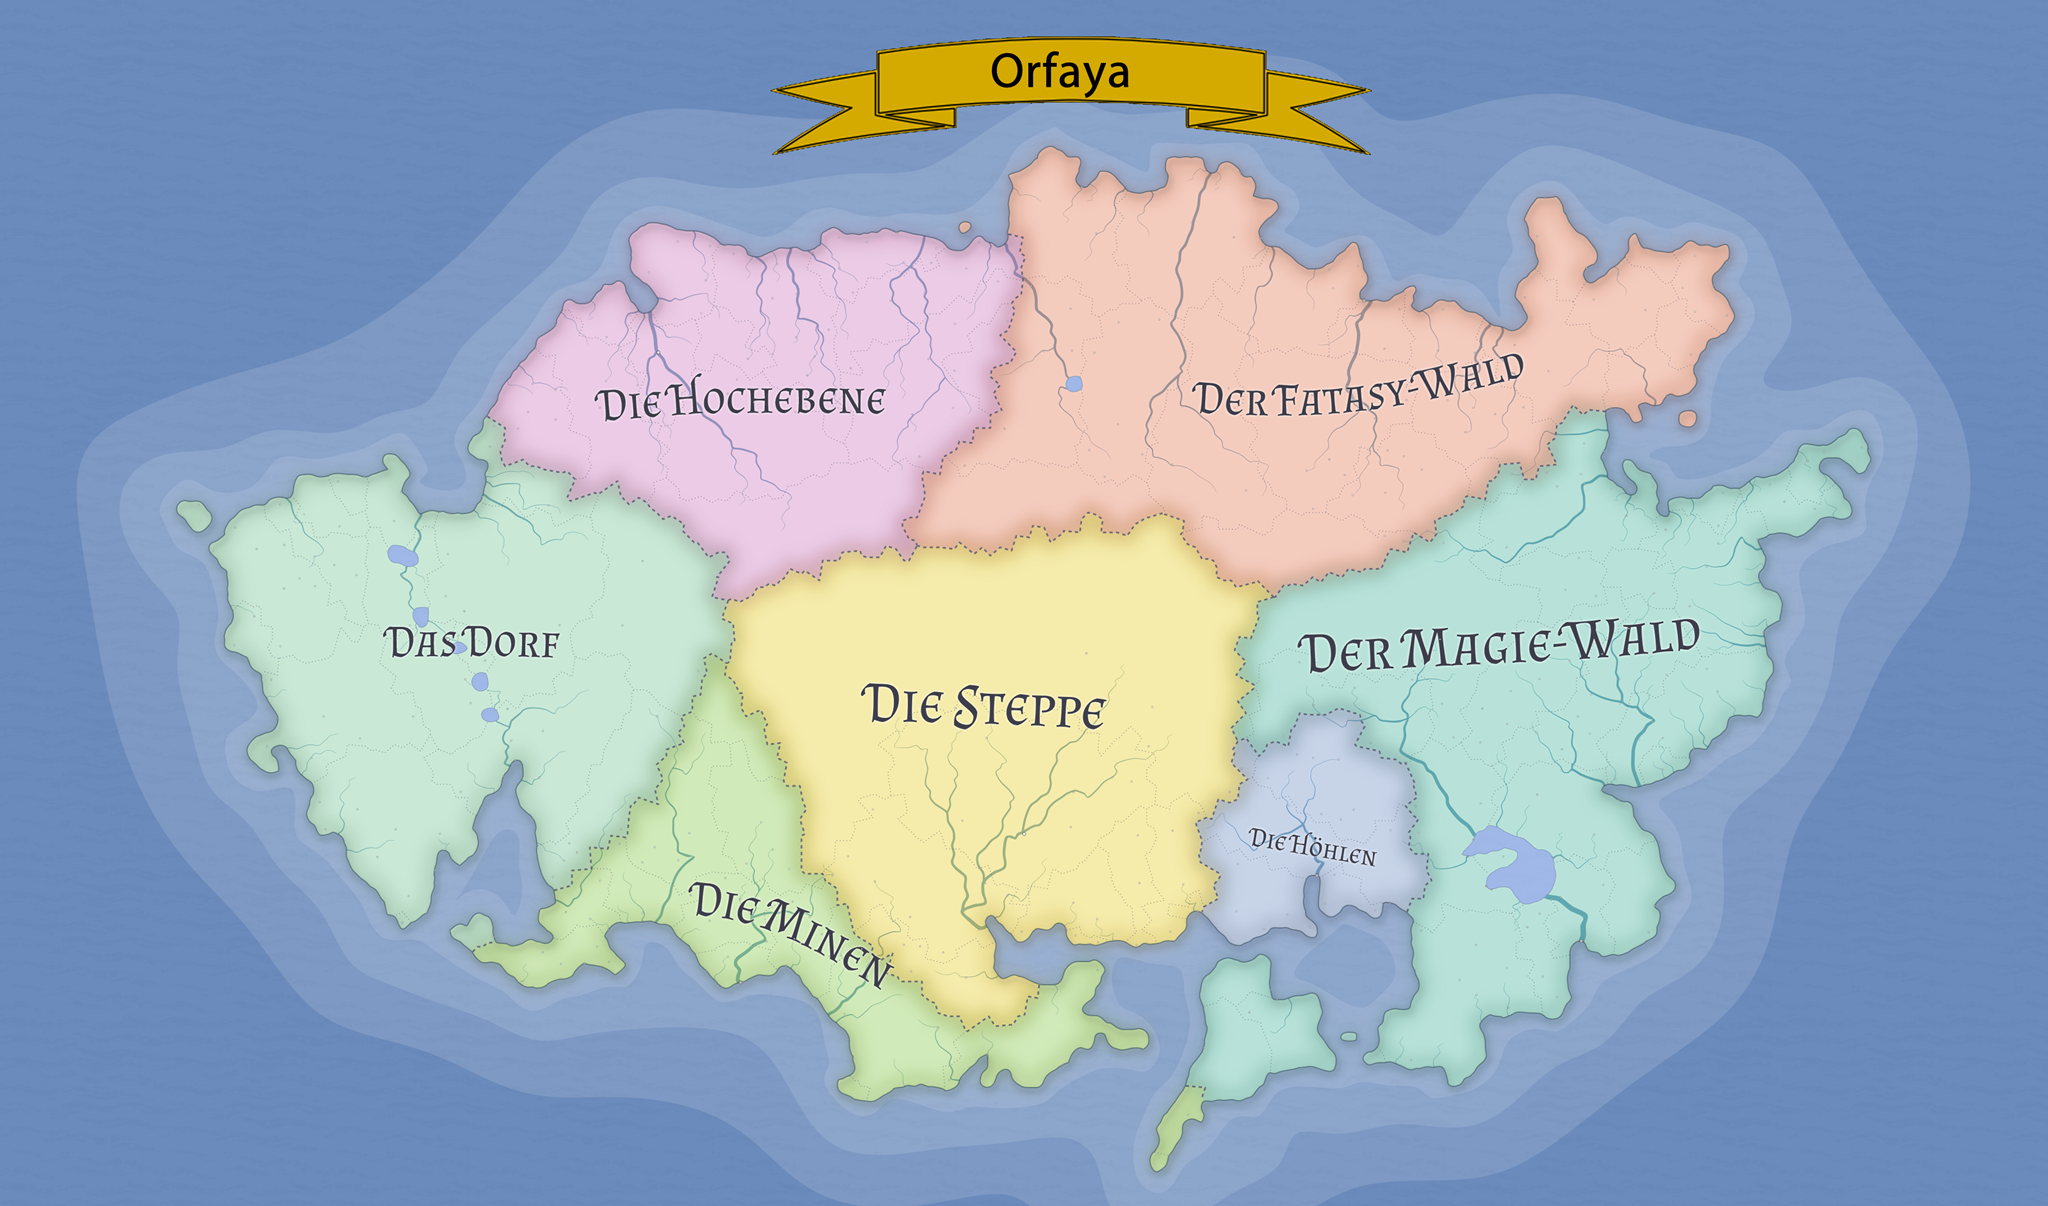 orfaya_map.fw-large.png